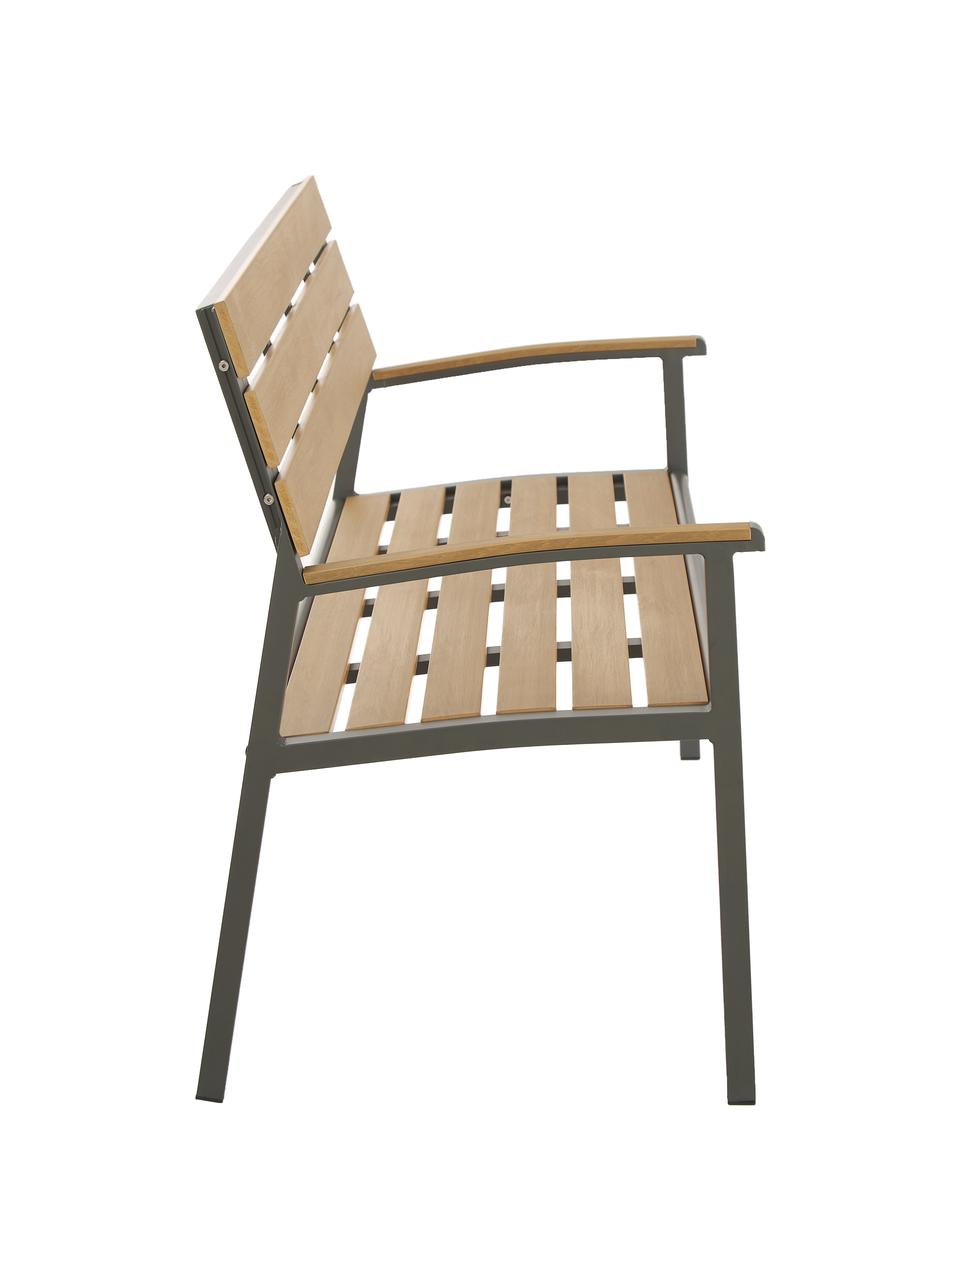 Garten-Sitbank Isak mit Rückenlehne, Sitzfläche: Sperrholz, beschichtet, Gestell: Aluminium, pulverbeschich, Anthrazit, Braun, 123 x 86 cm